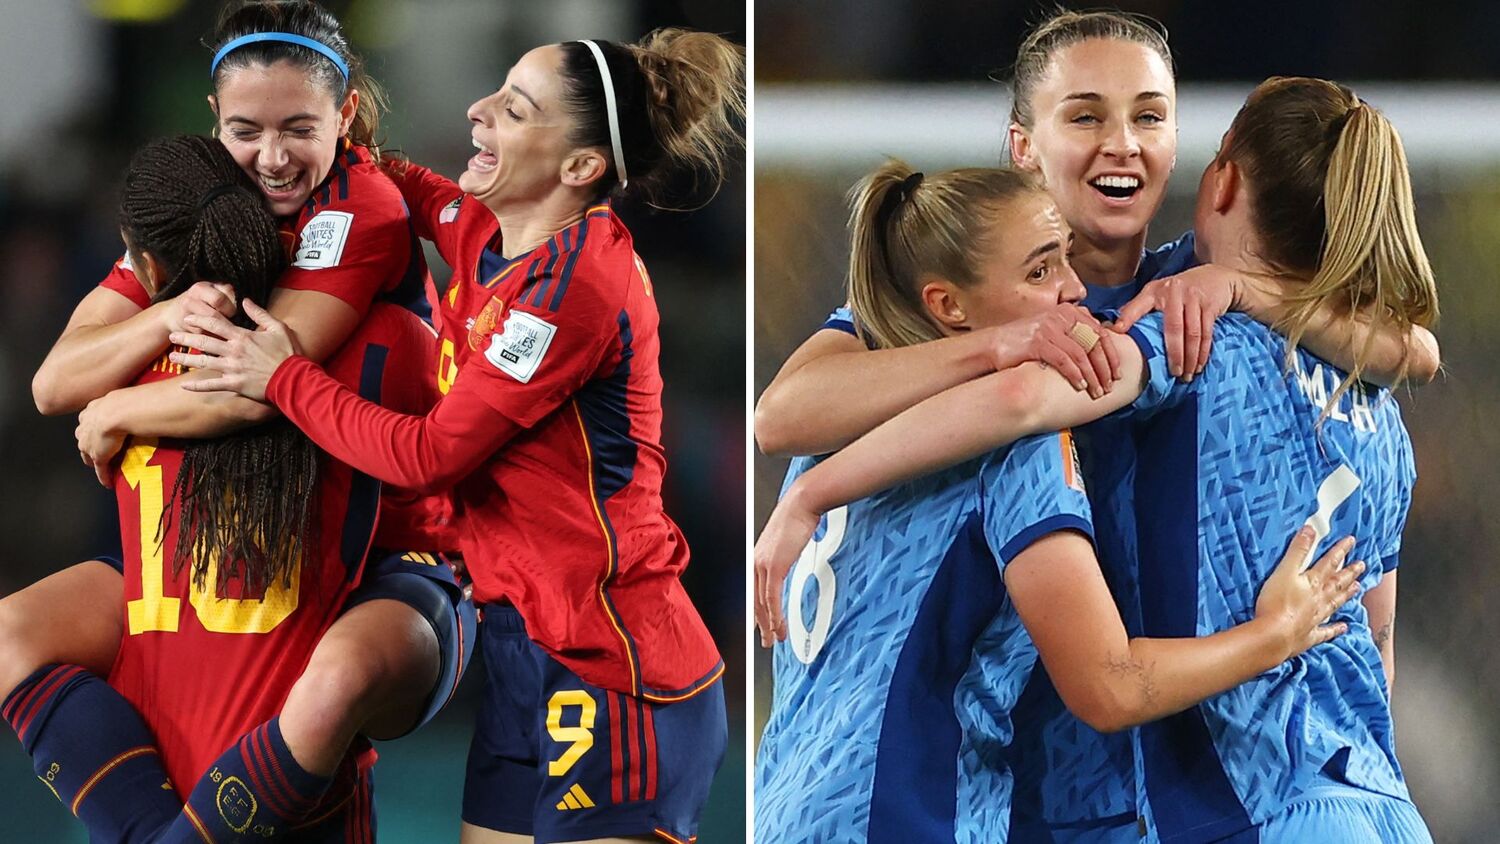 Fase final do EURO Sub-19 Feminino de 2022: Conheça as finalistas